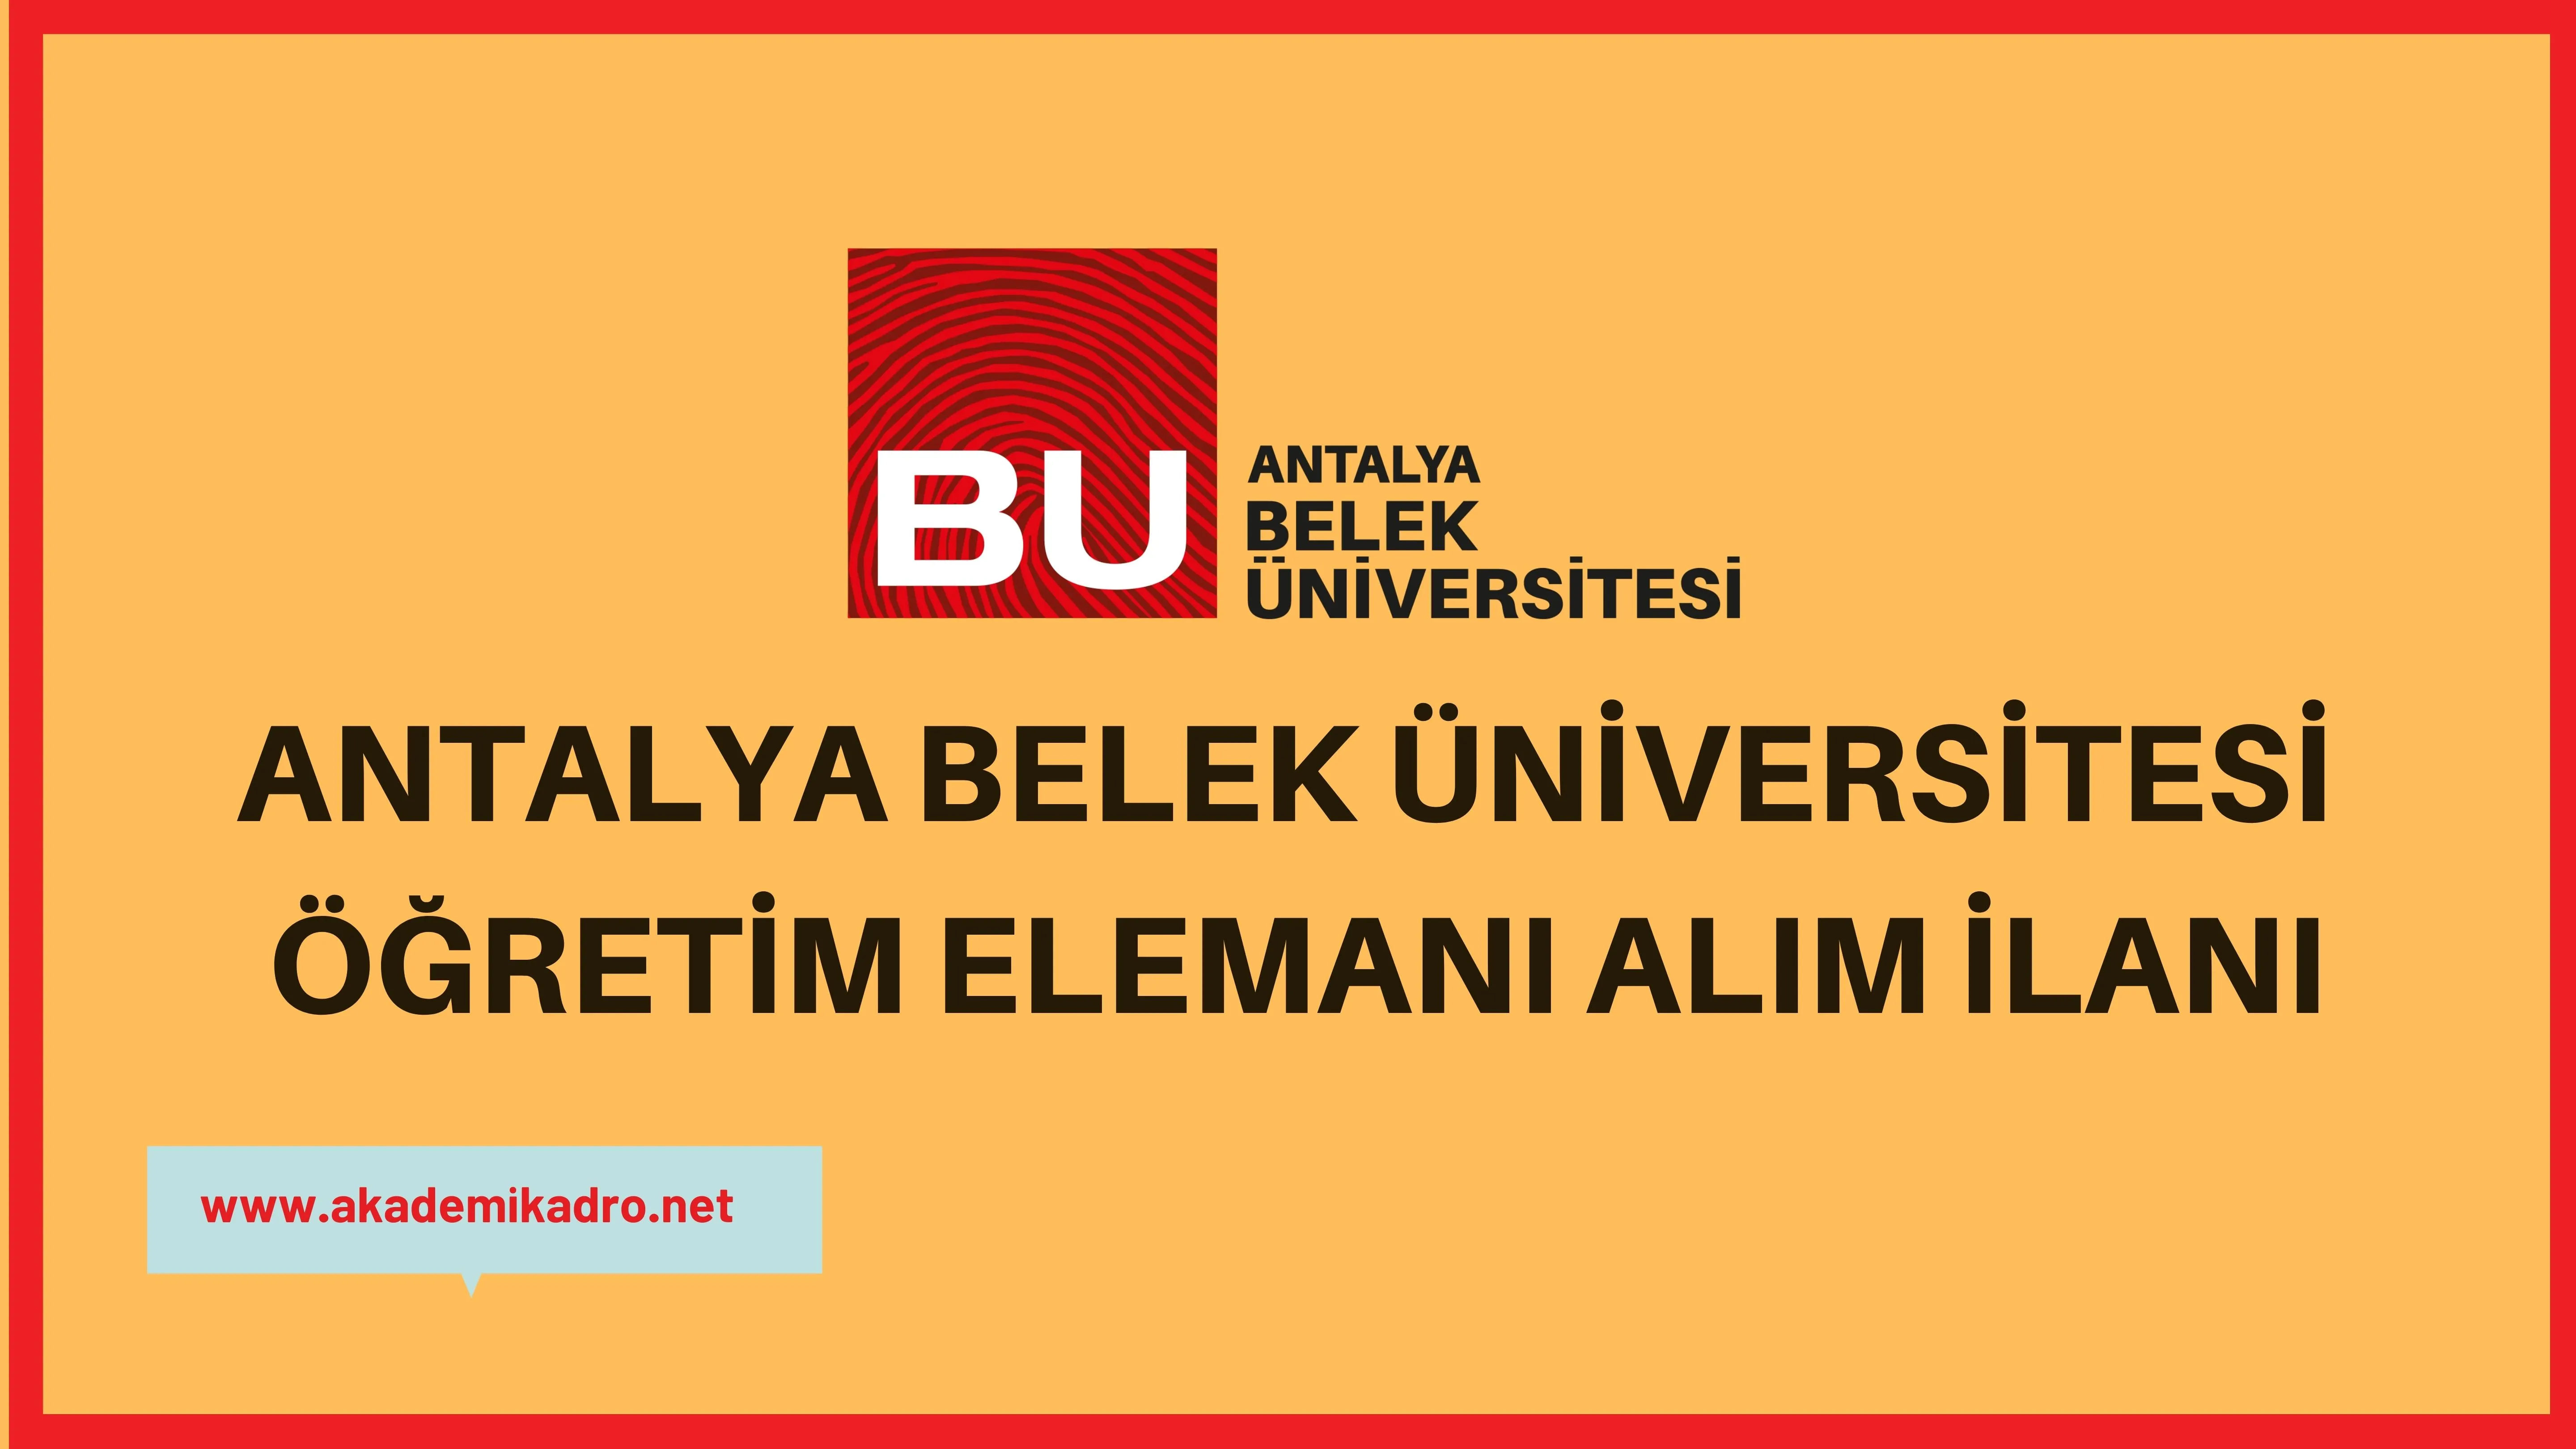 Antalya Belek Üniversitesi 3 Öğretim görevlisi ve 12 öğretim üyesi olmak üzere 15 öğretim elemanı alacak.